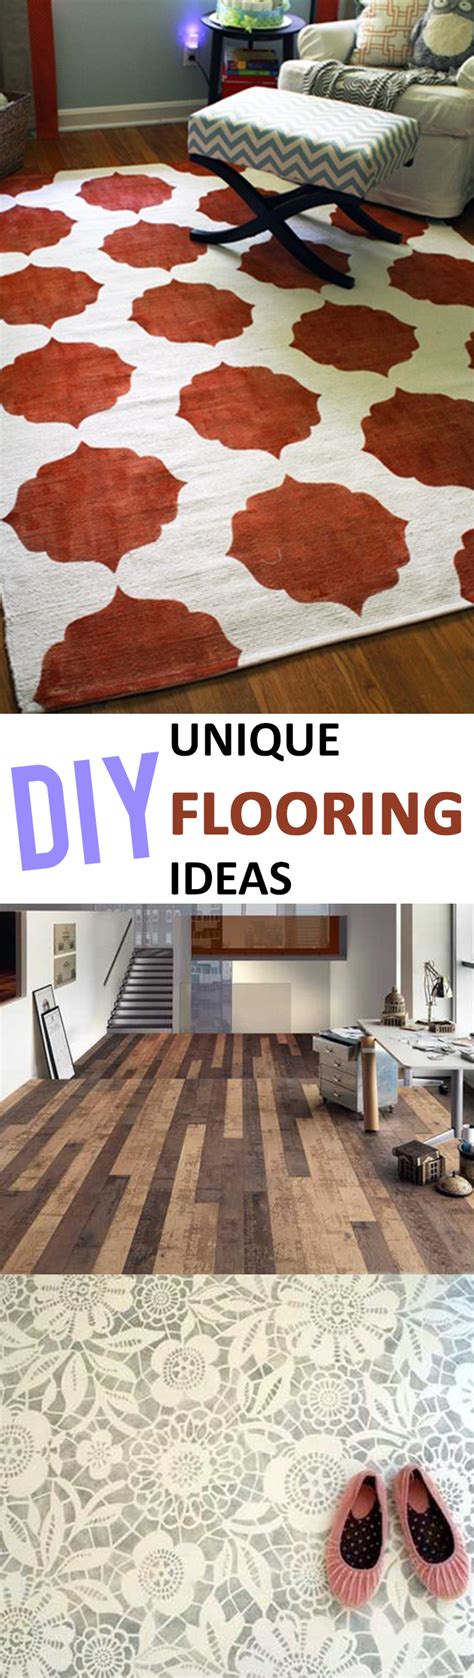 unique diy flooring ideas